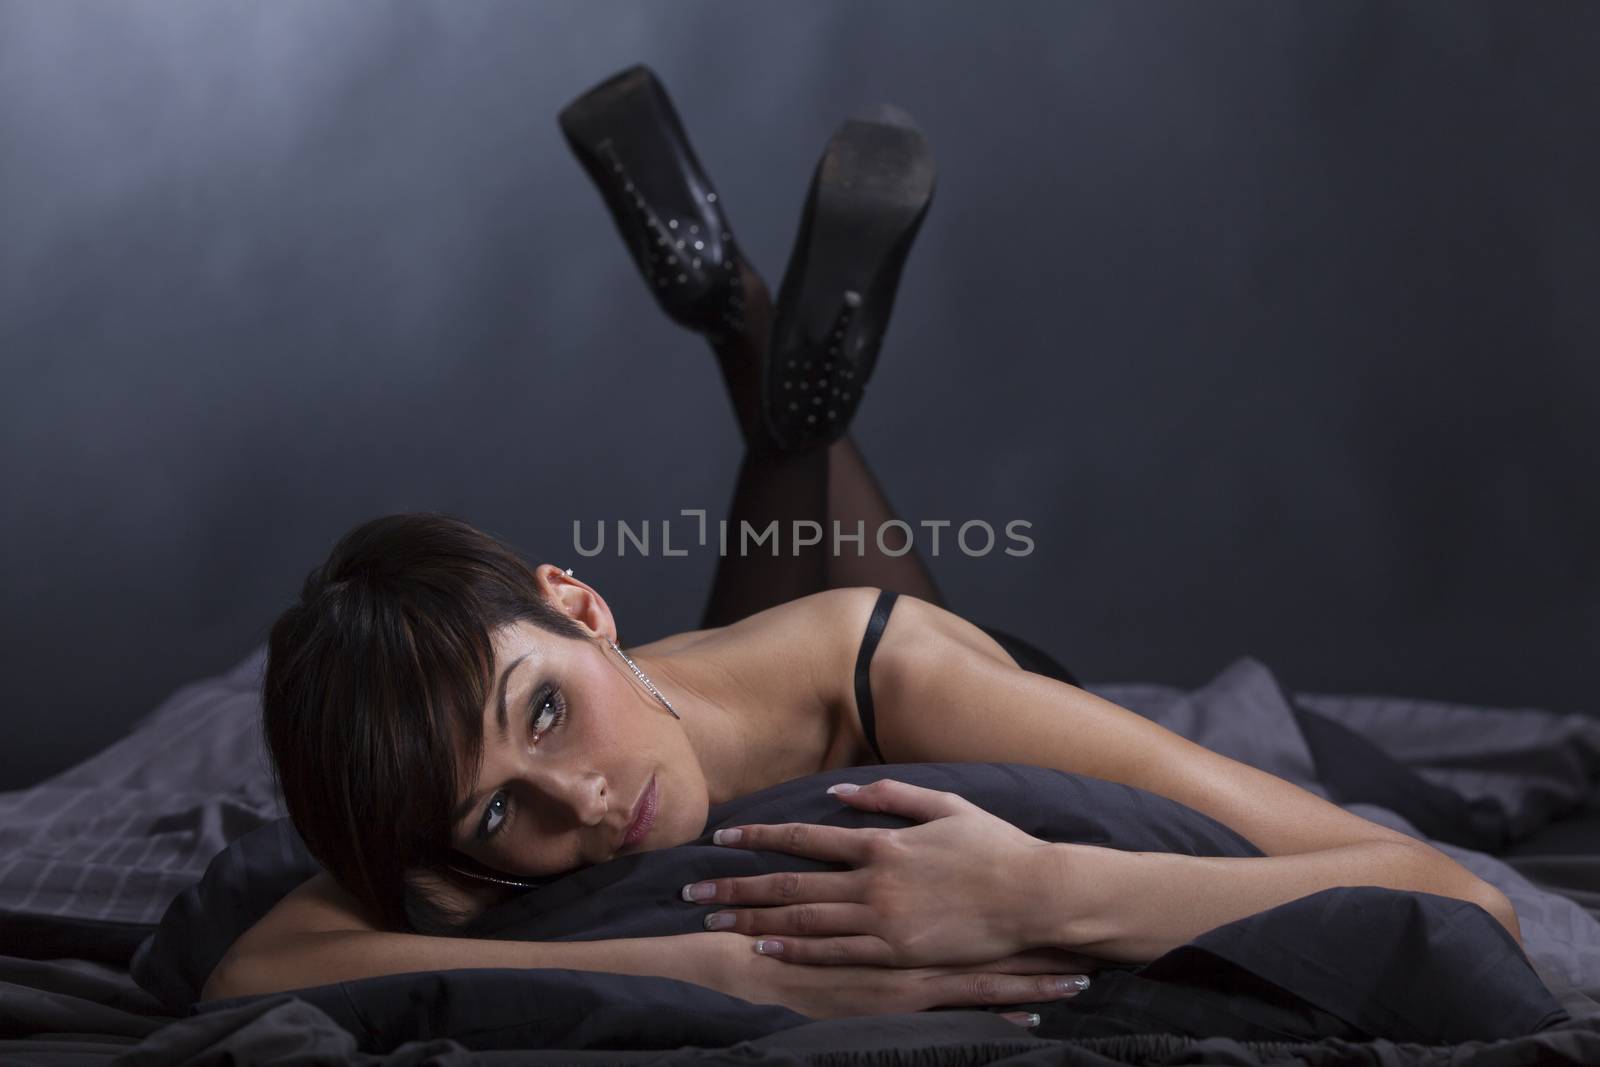 brunette woman lying in bed